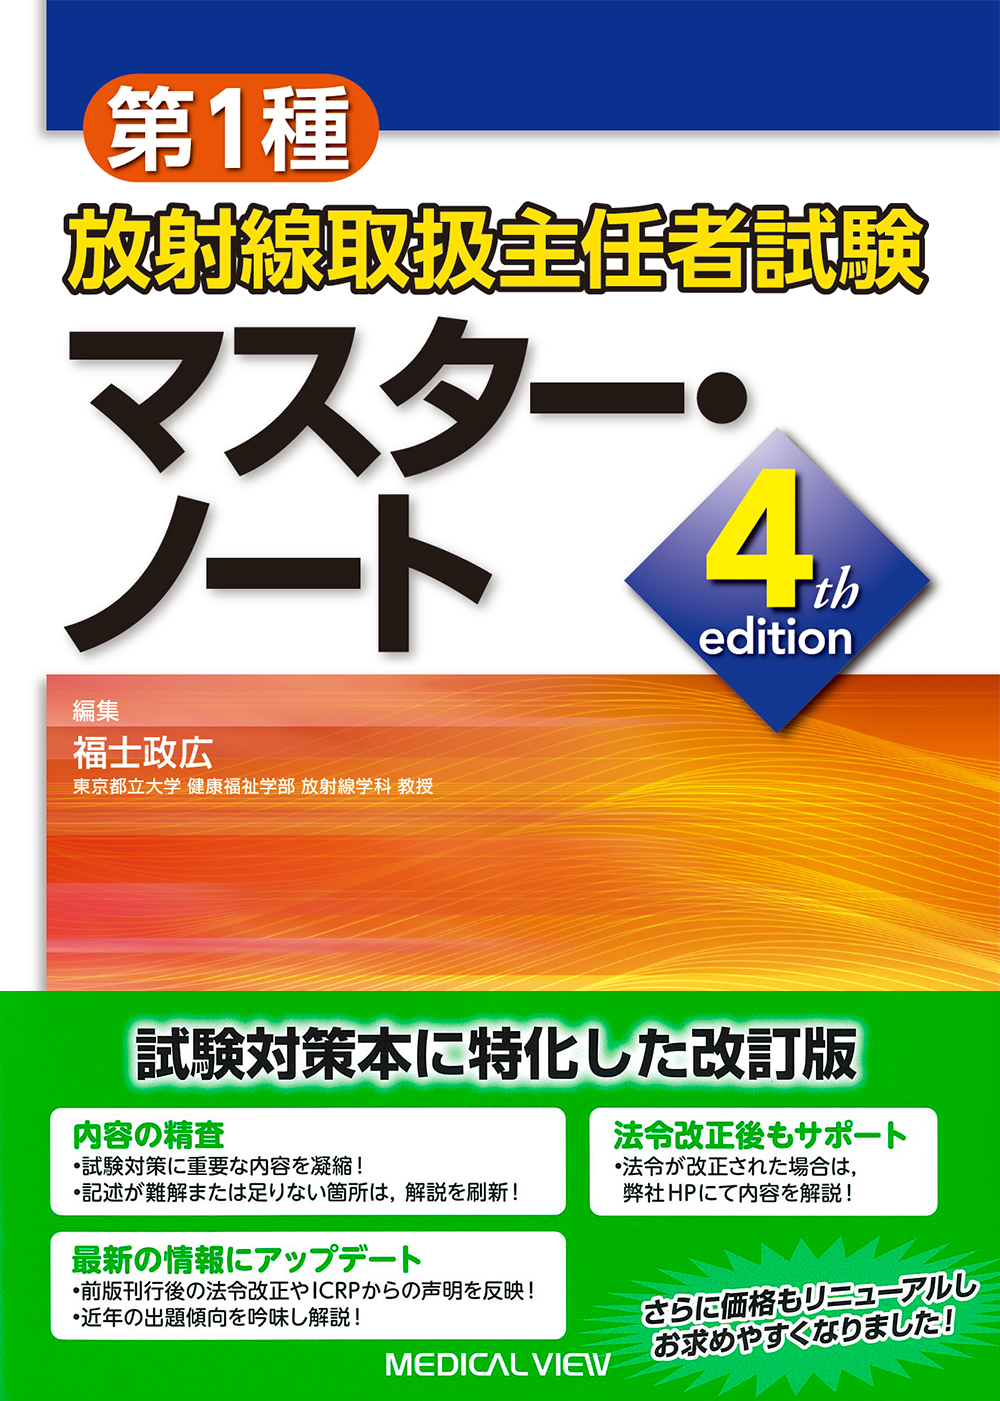 第1種放射線取扱主任者試験 マスター・ノート 4th edition【電子版 ...